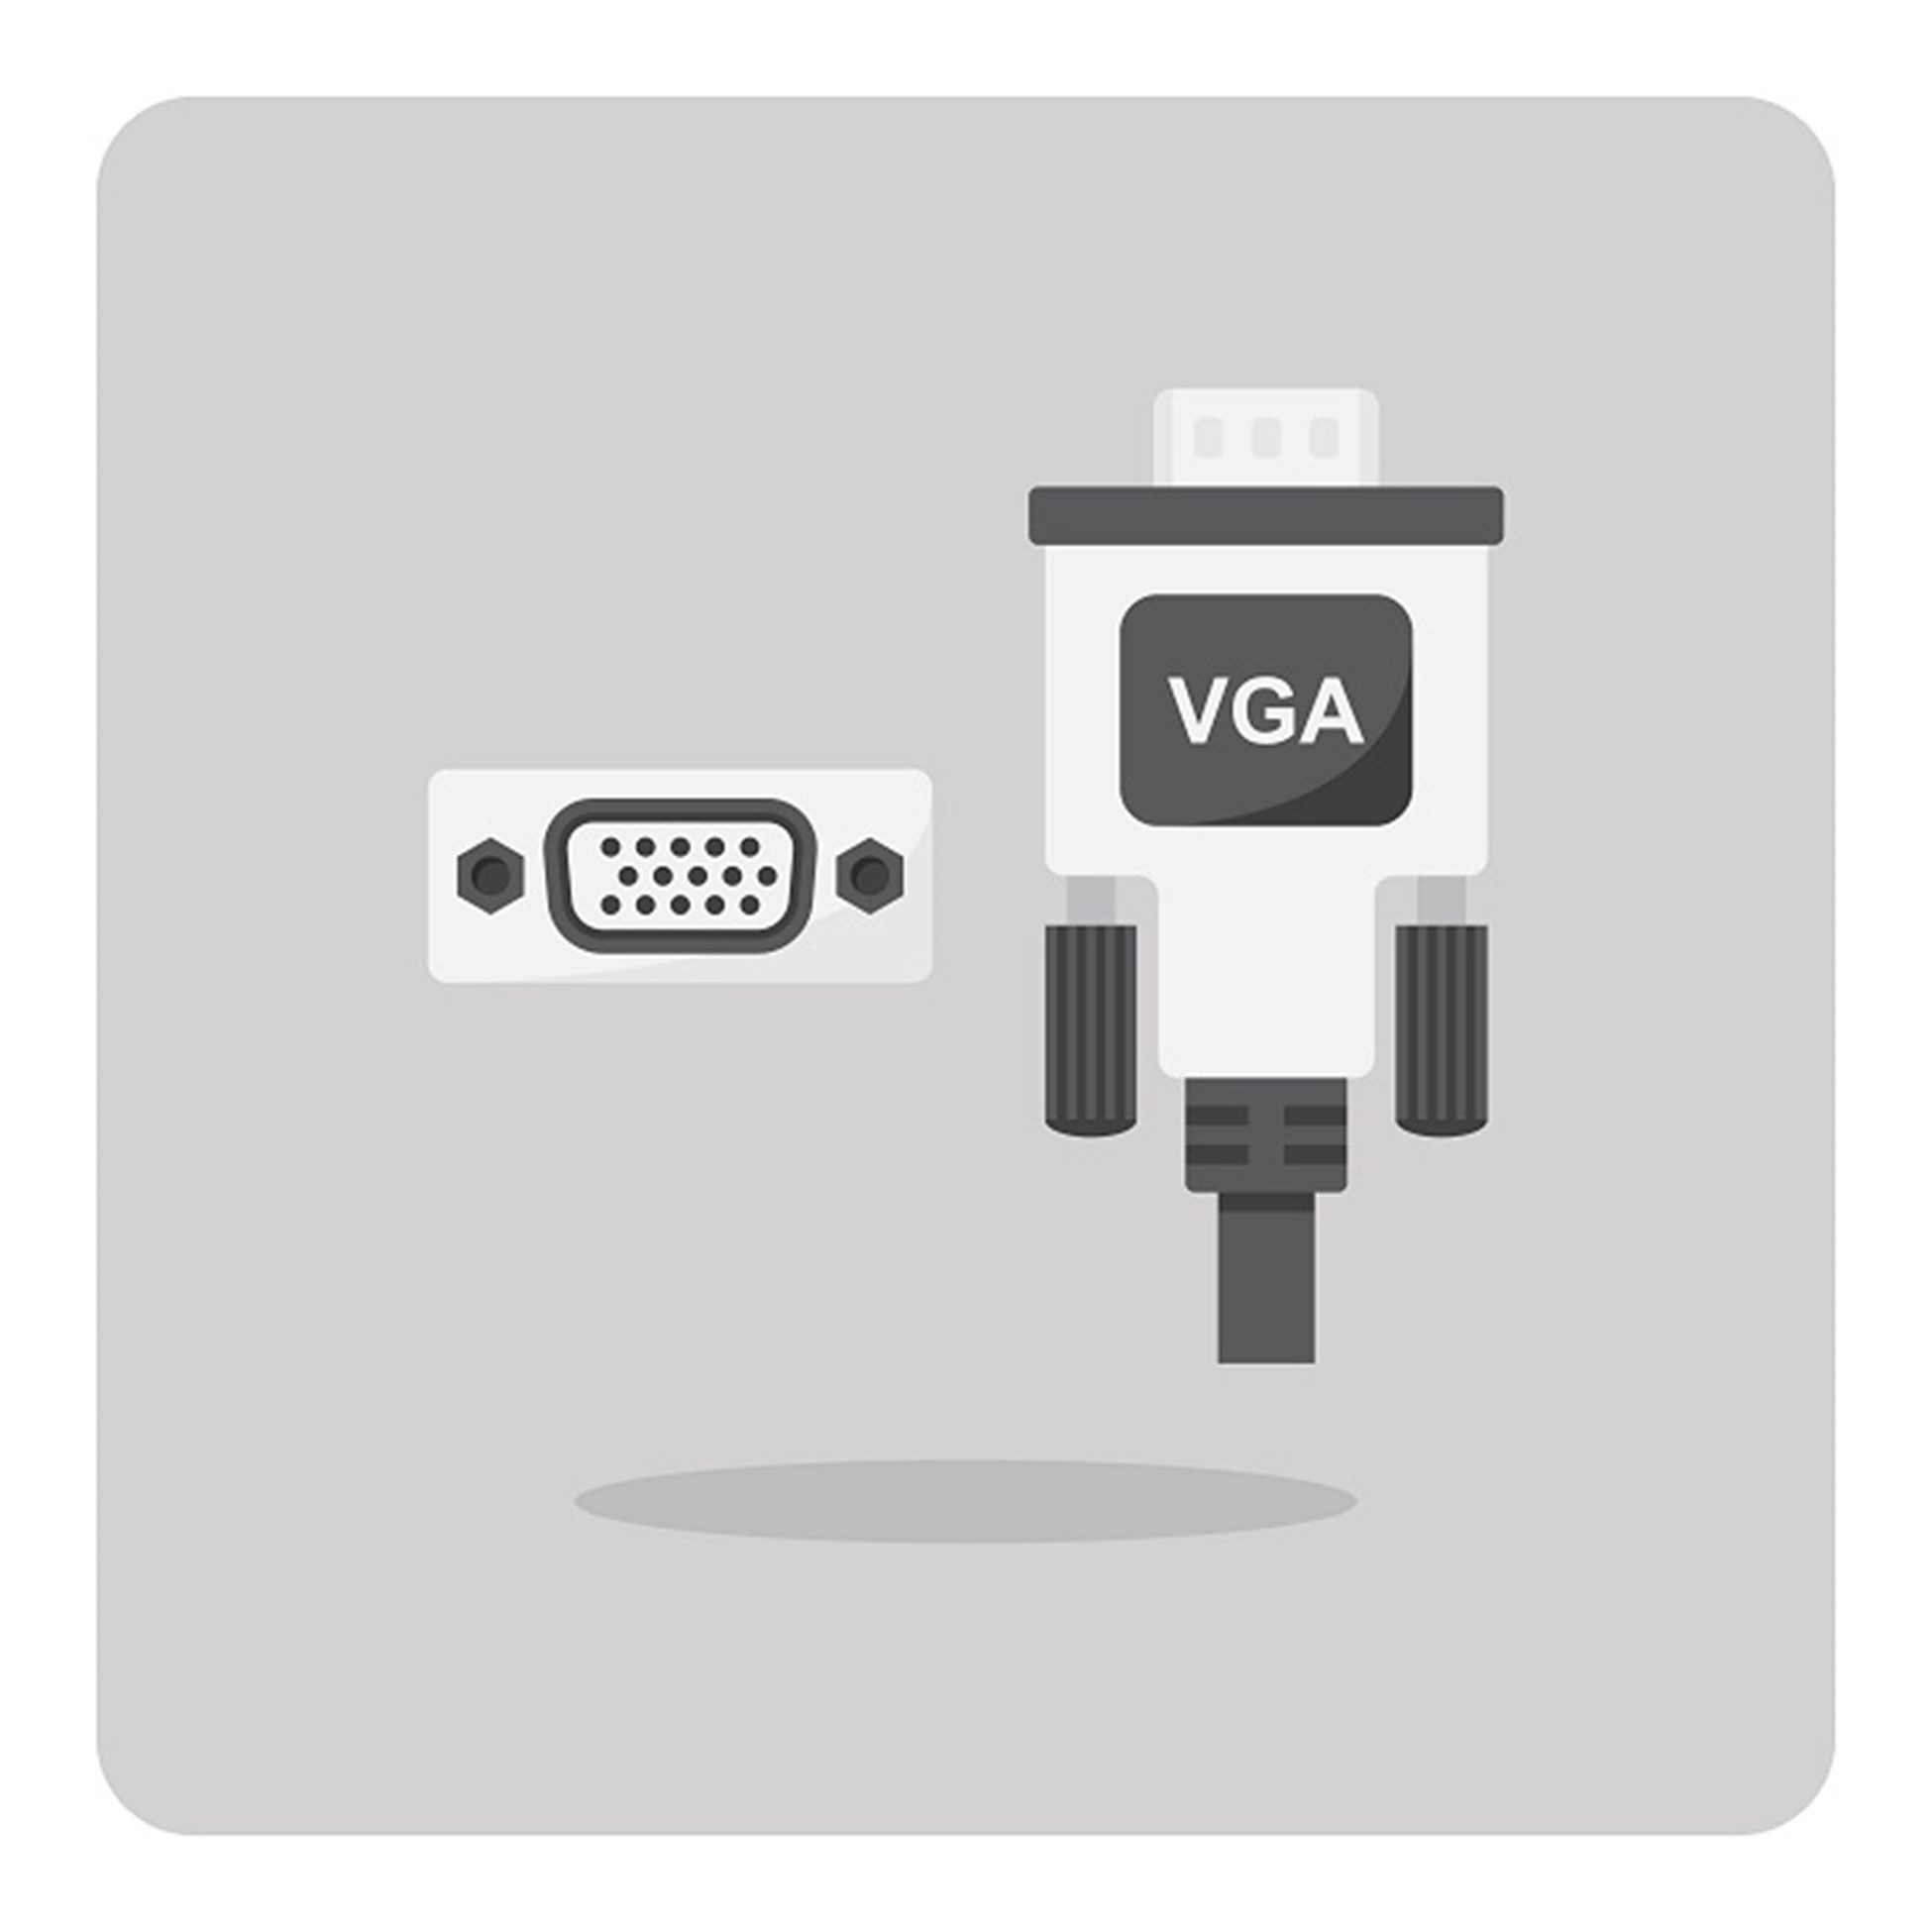  مشخصات کابل  VGA | خدمات کامپیوتری رایانه کمک 